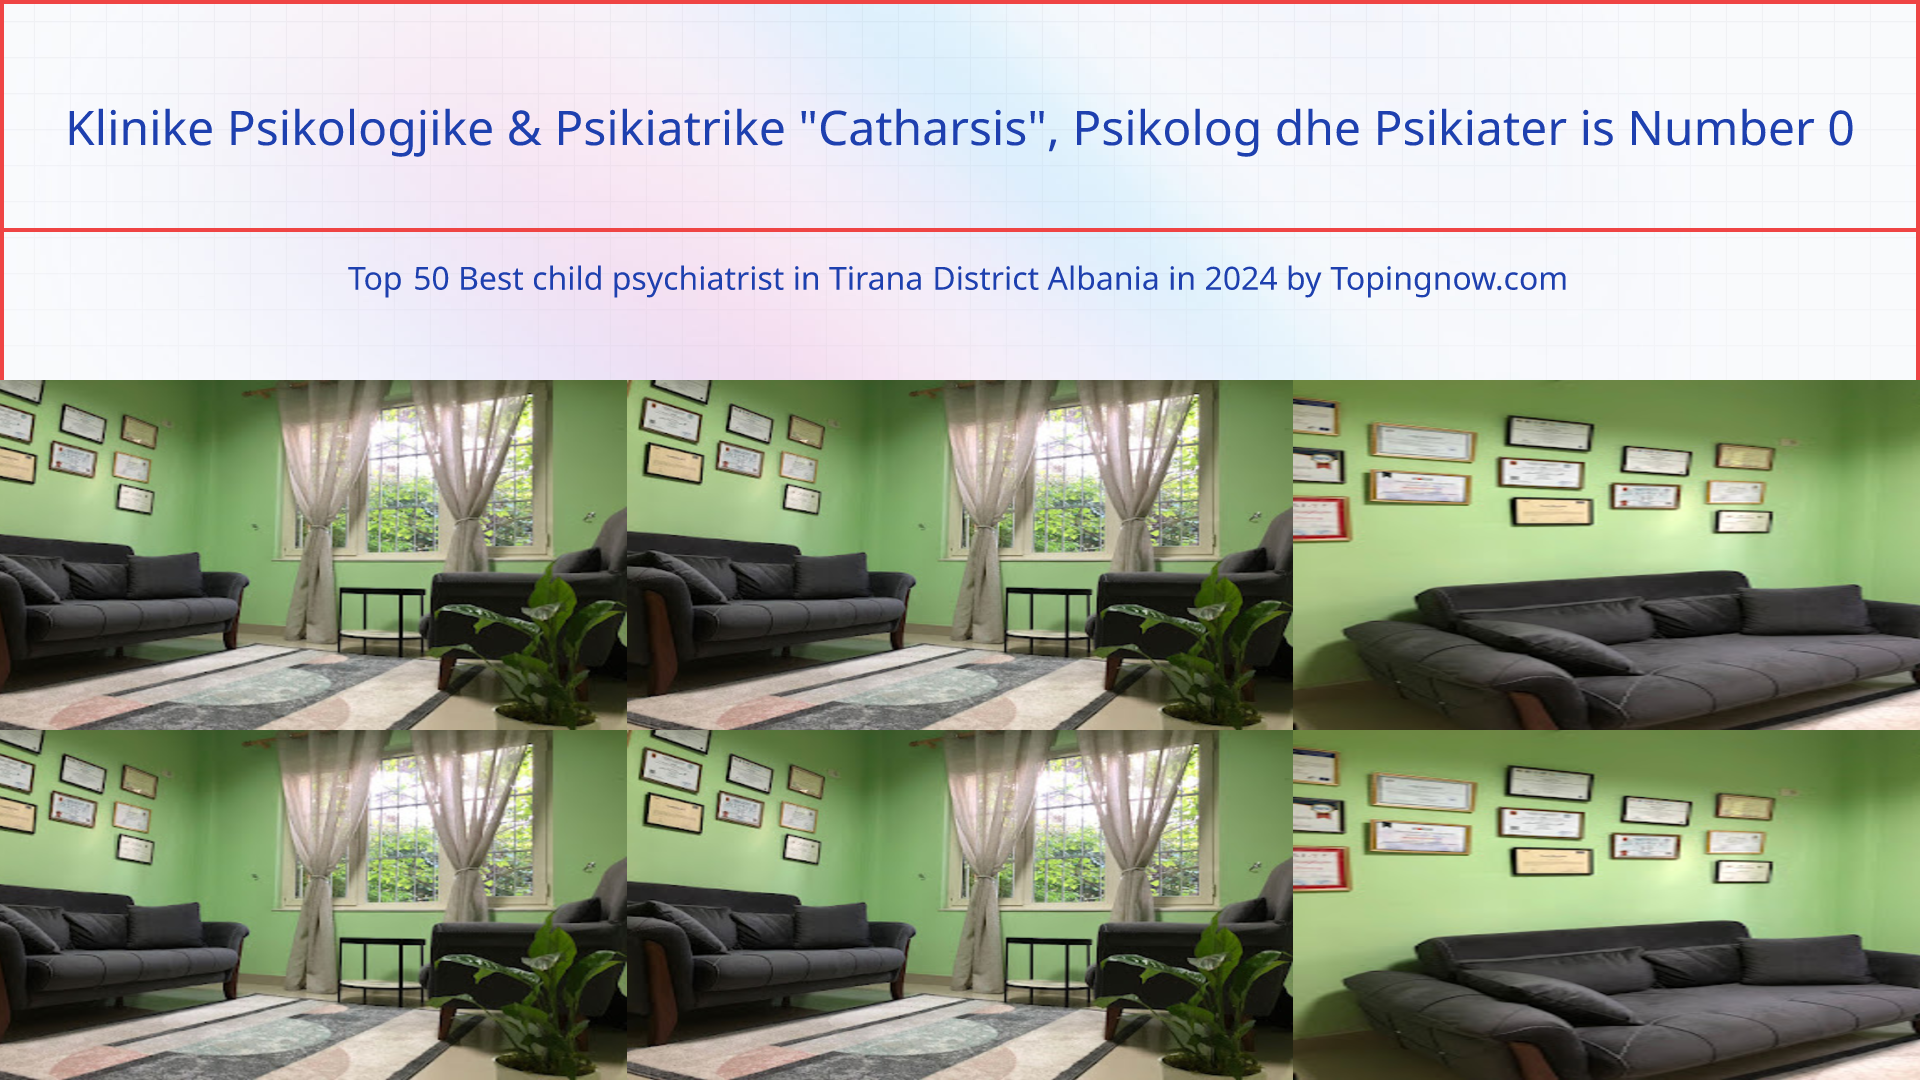 Klinike Psikologjike & Psikiatrike "Catharsis", Psikolog dhe Psikiater: Top 50 Best child psychiatrist in Tirana District Albania in 2024